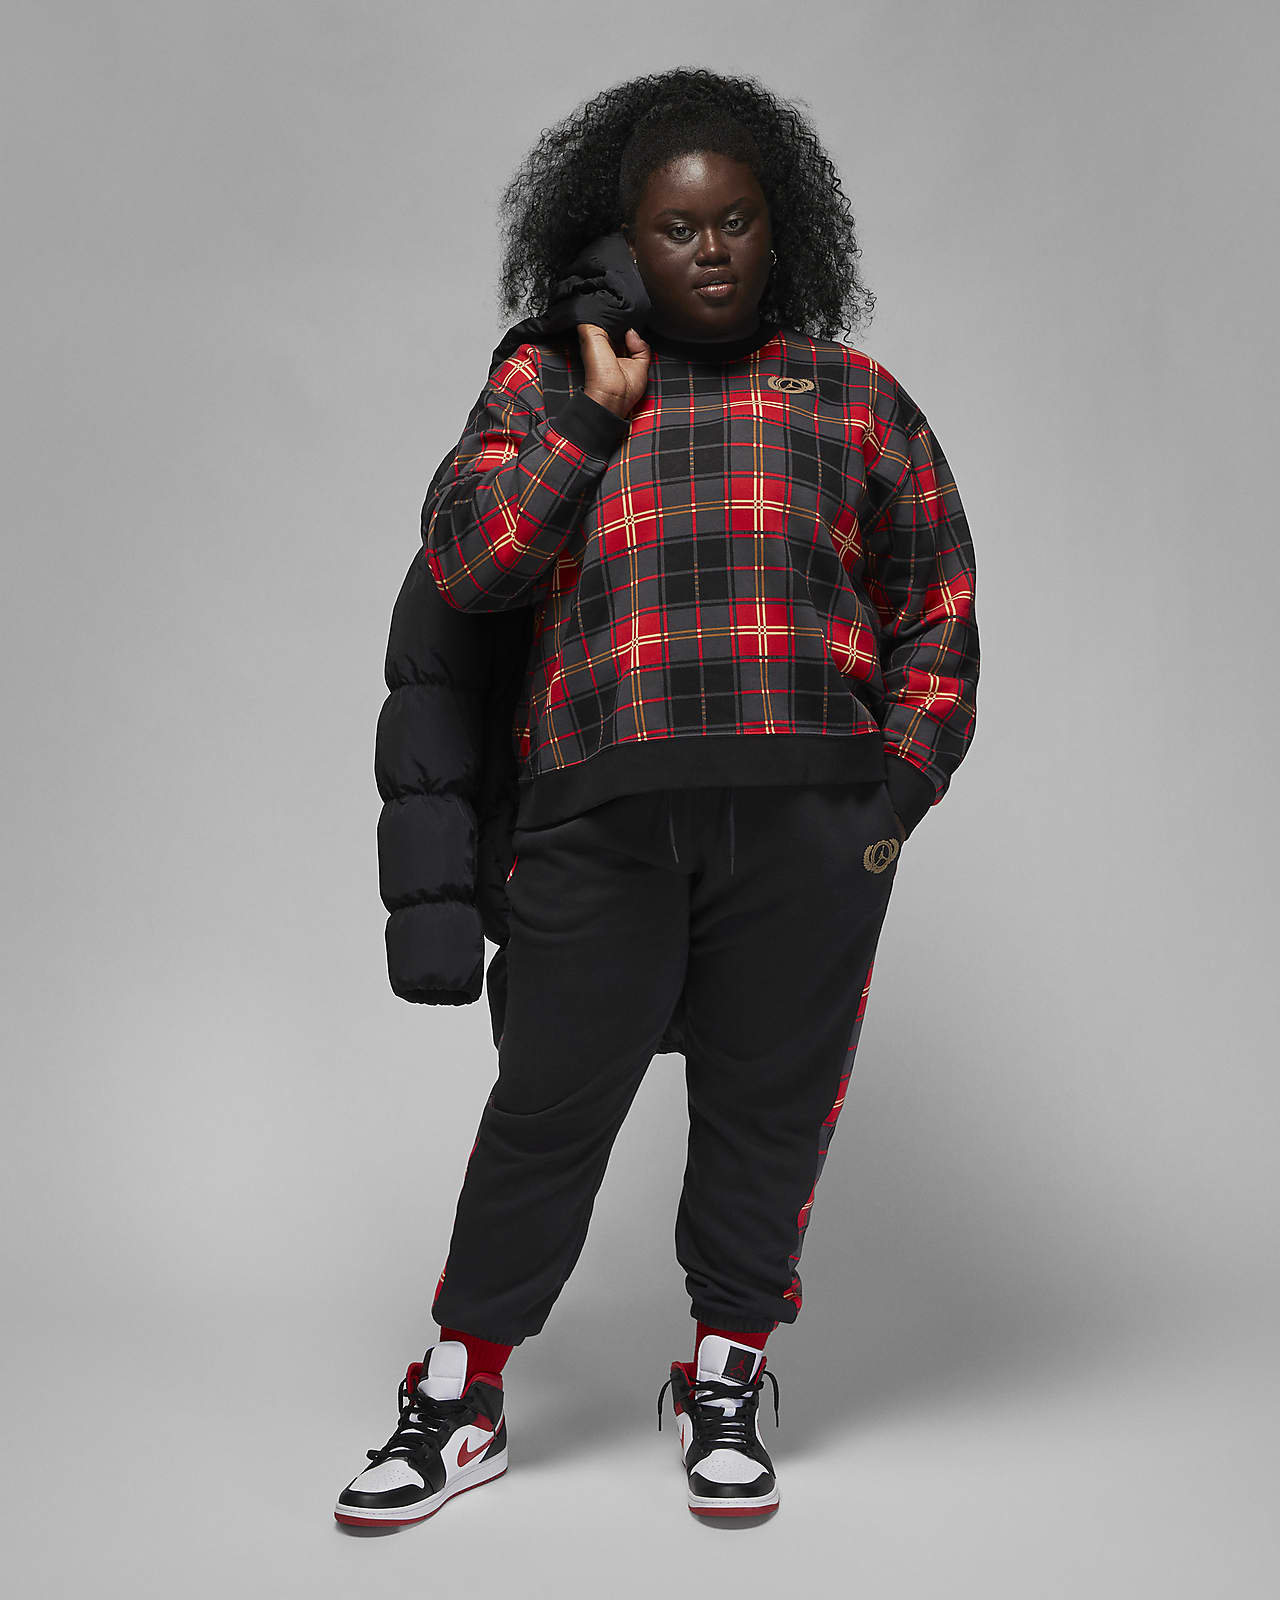 Pants para mujer talla grande Brooklyn Fleece. Nike.com